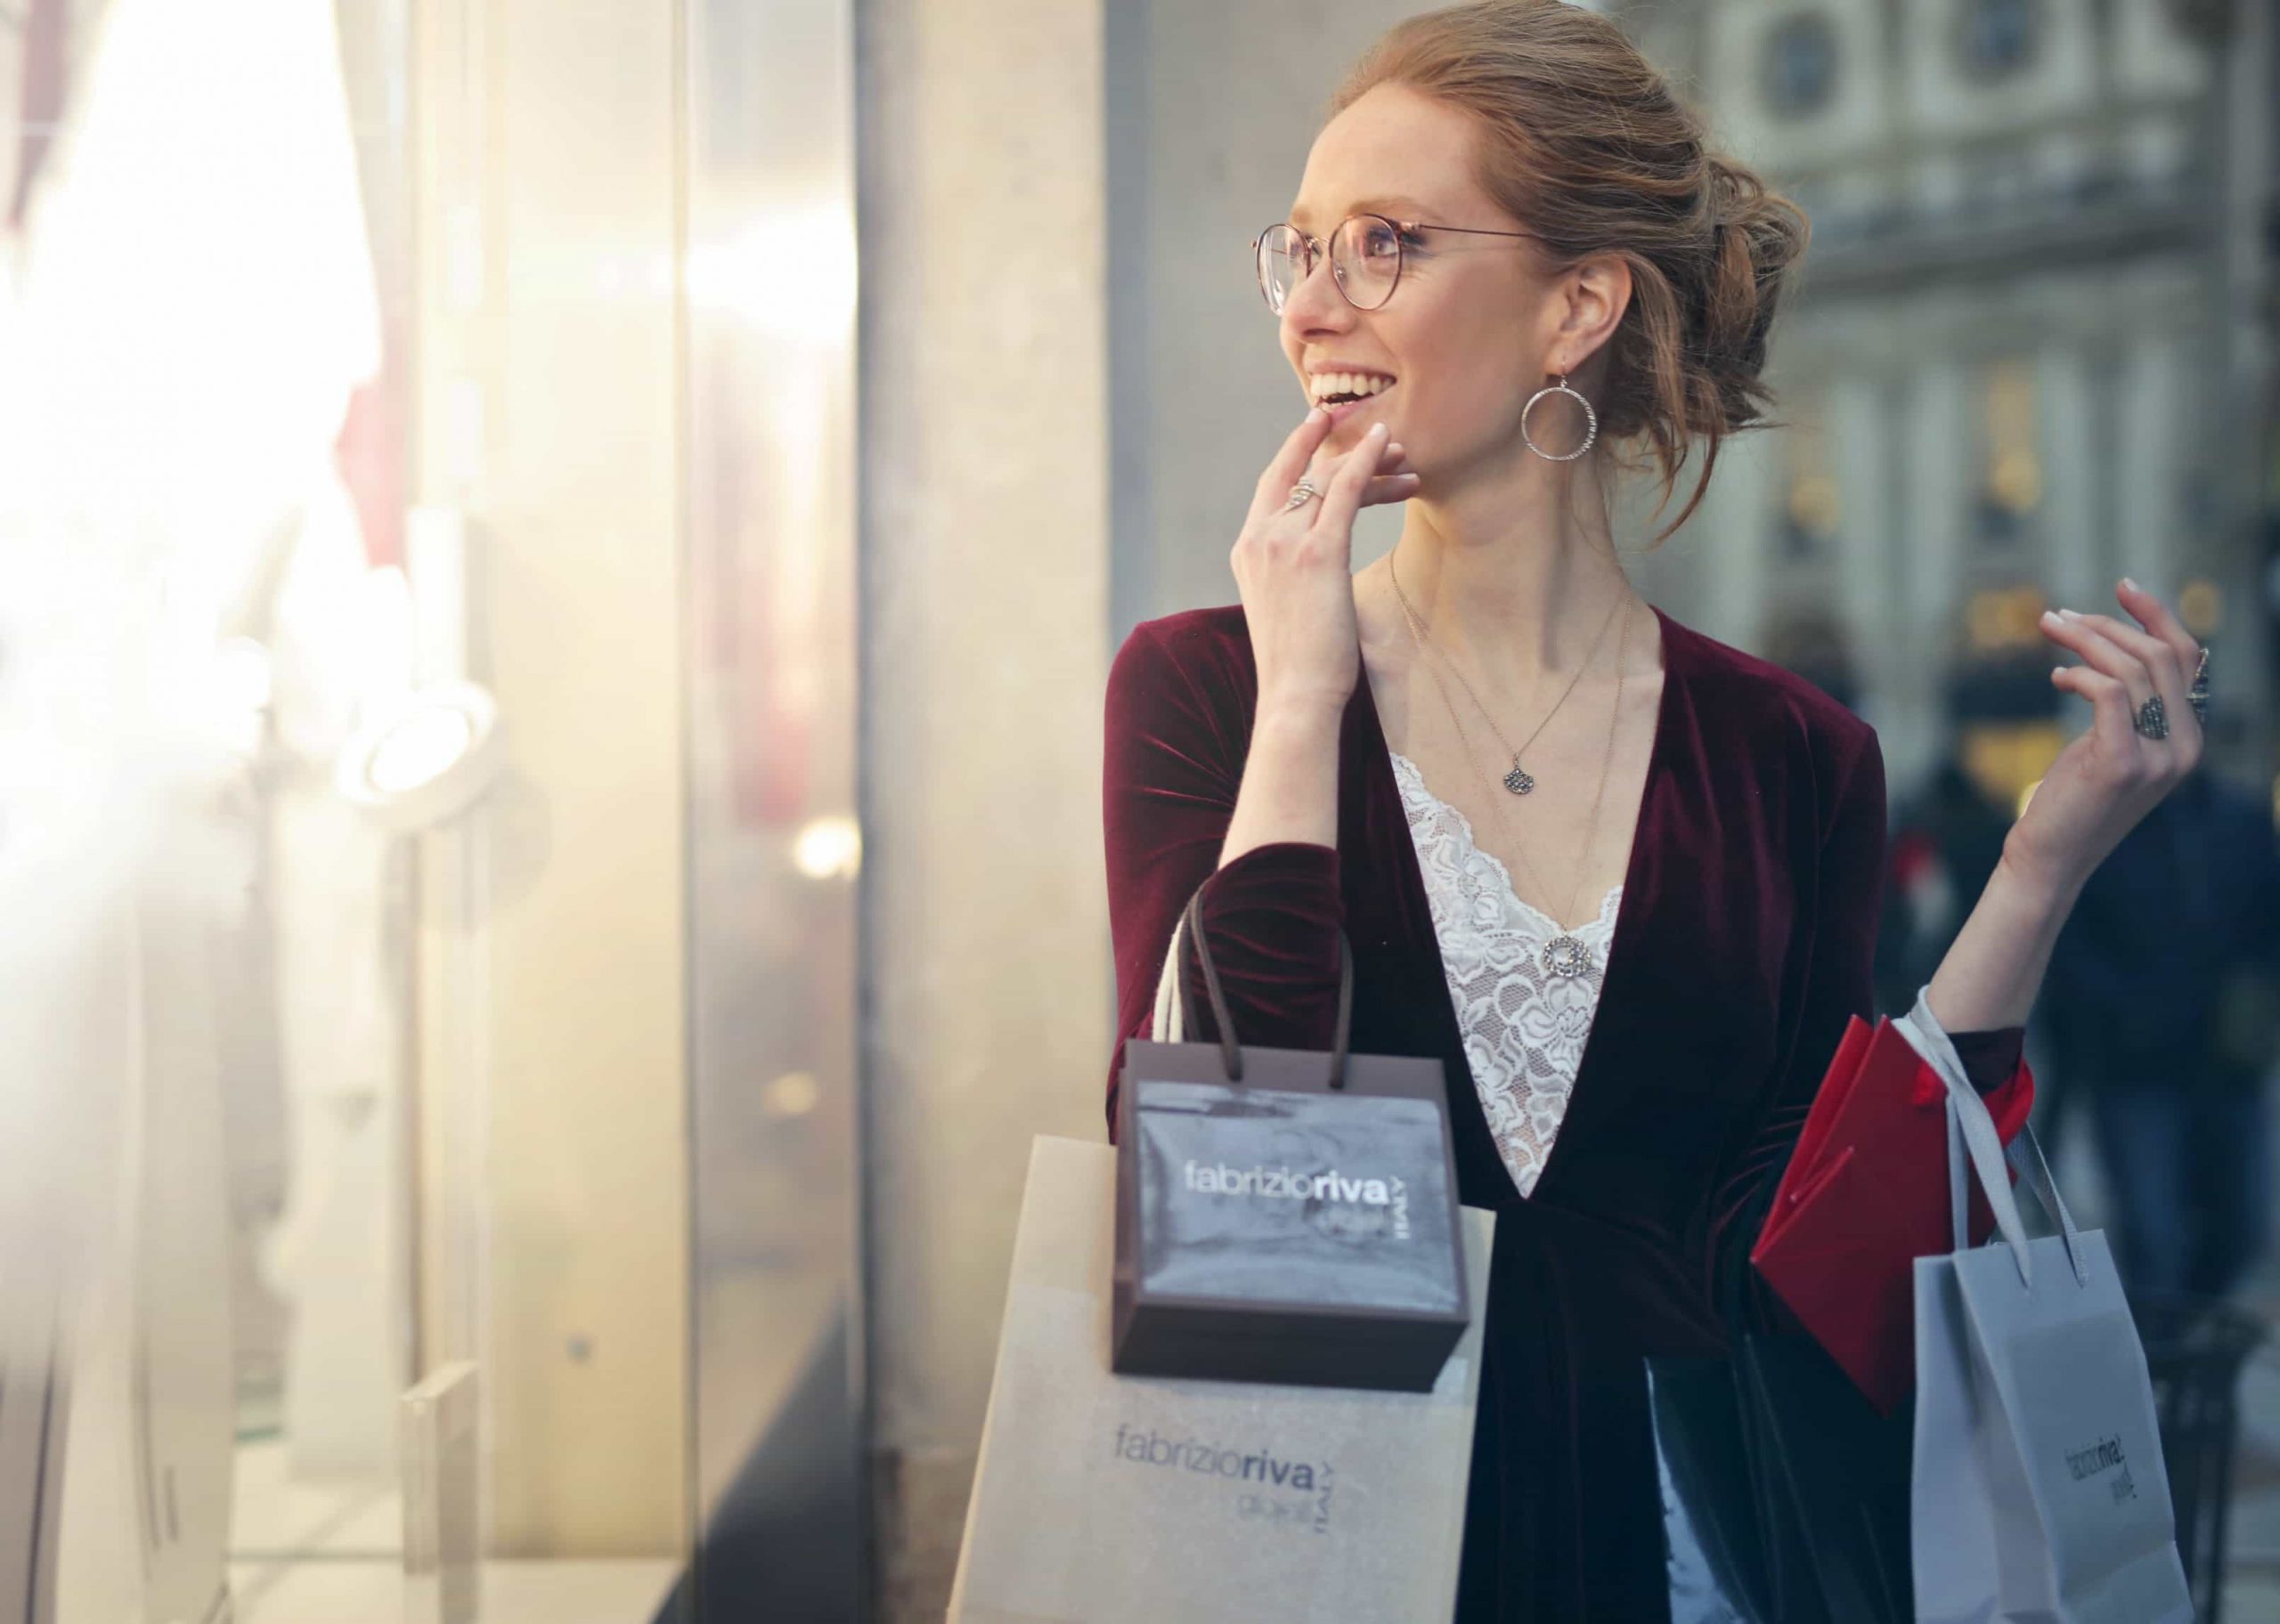 Auf dem Bild sieht man eine junge Frau mit Einkaufstüten um den Arm. Sie lächelt. Das Bild soll den Einzelhandel Salesjob andeuten.